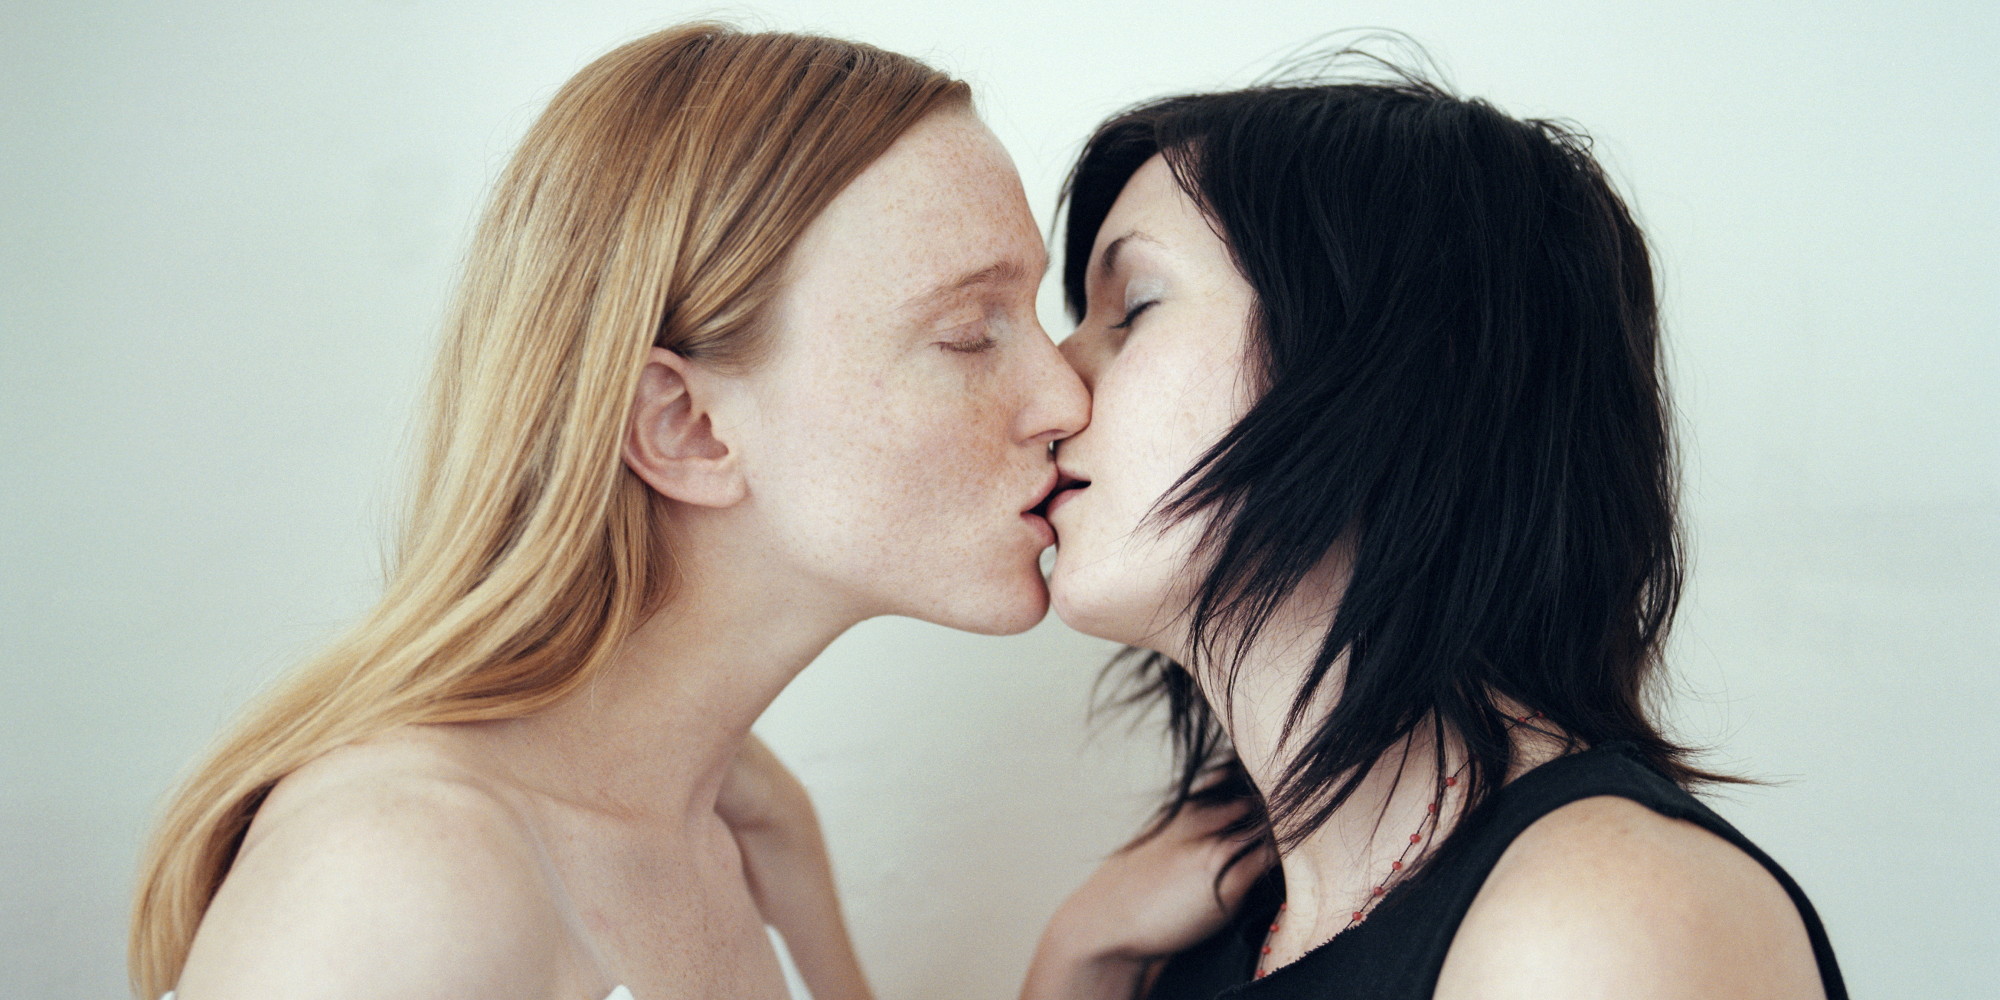 Lesbian live sex together